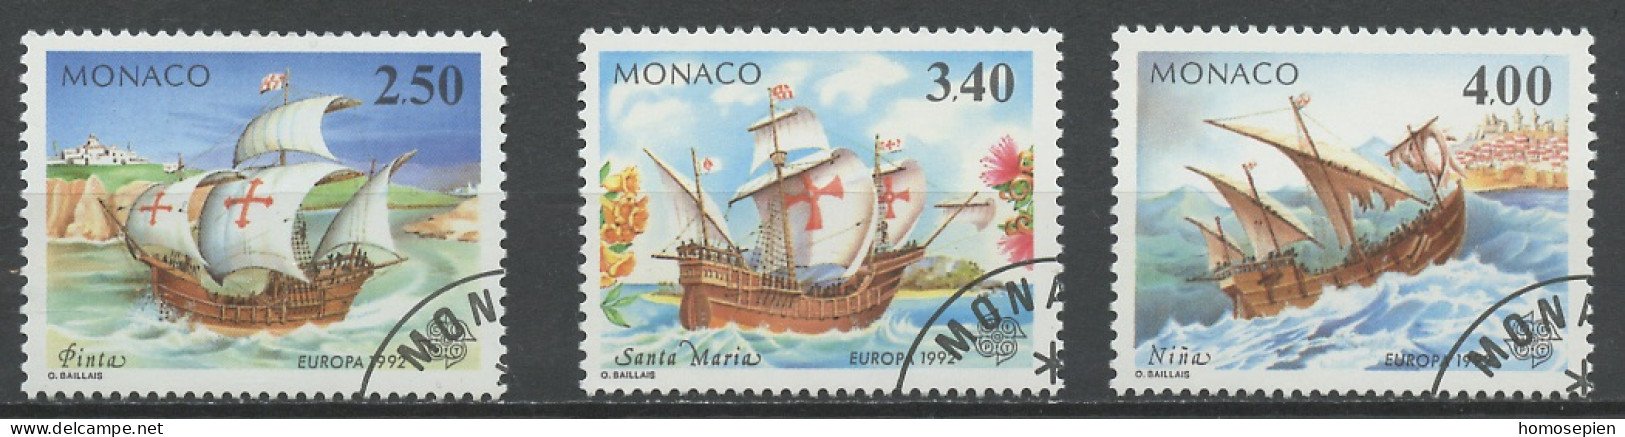 Monaco 1992 Y&T N°1825 à 1827 - Michel N°2070 à 2072 (o) - EUROPA - Gebruikt